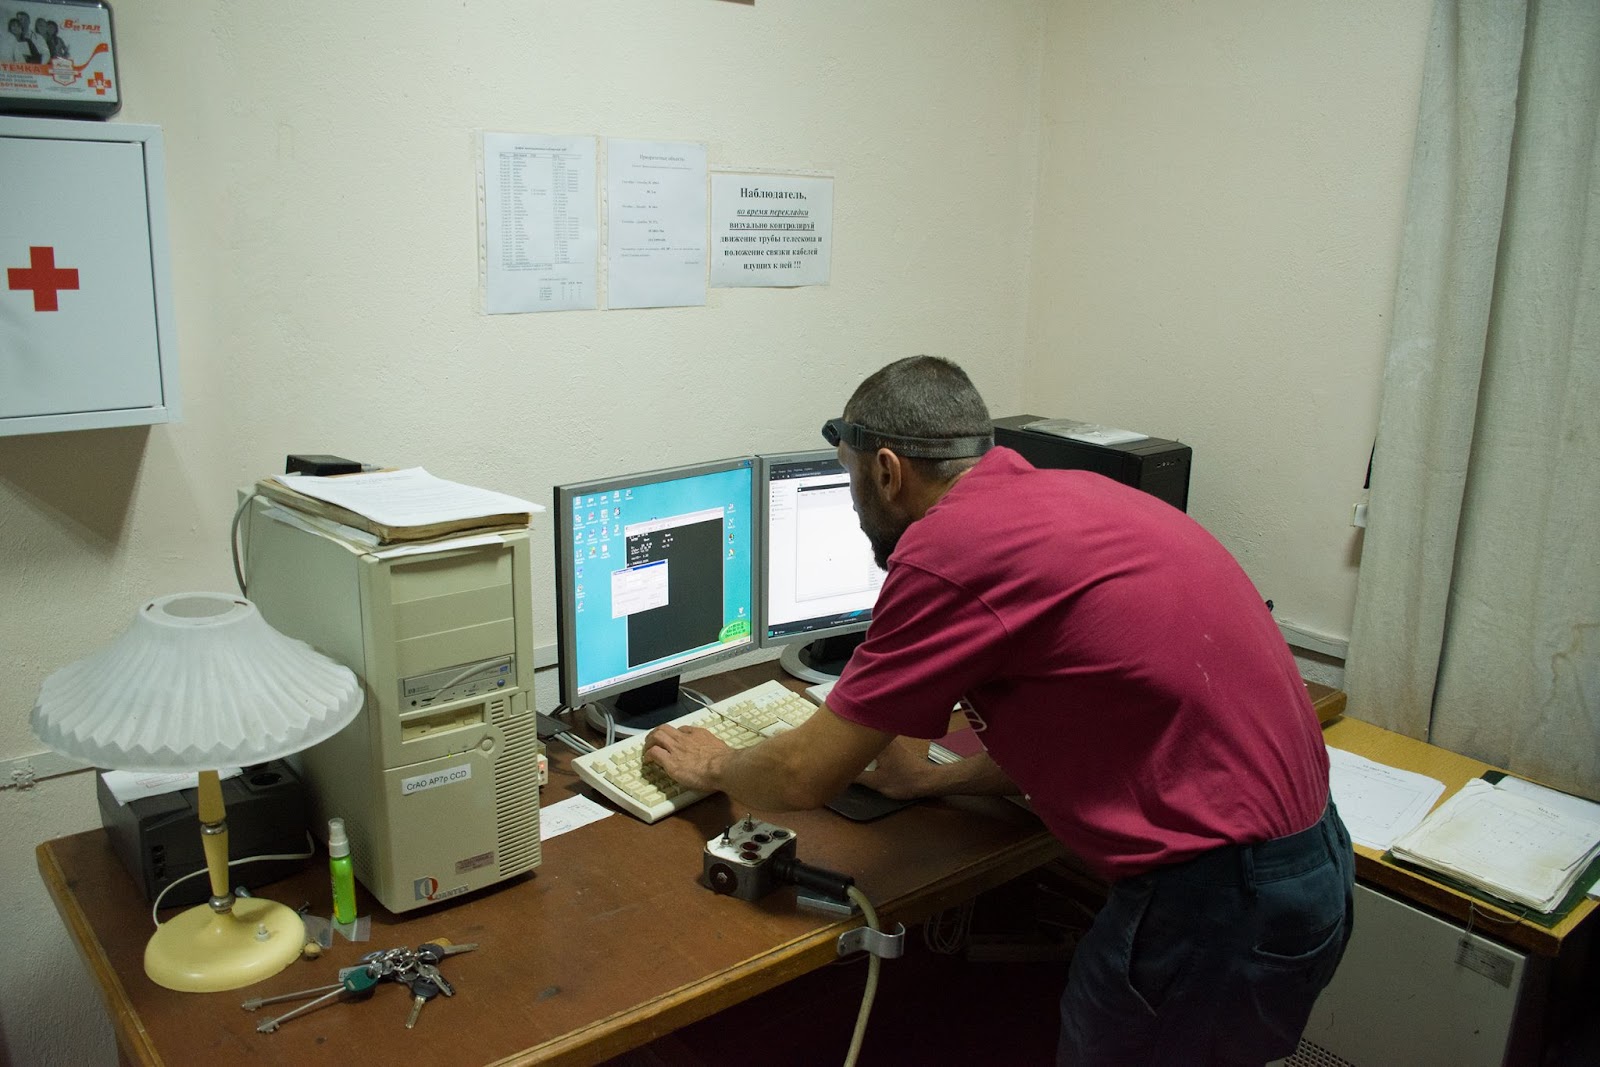 Рабочее место астронома представлено двумя компьютерами. В системном блоке слева стоит процессор «Pentium-II», полученный от американских коллег ещё в двухтысячных. Компьютер справа под управлением ОС Linux — апгрейд недавнего времени. В центре находится проводной пульт — образец неубиваемой советской электроники.